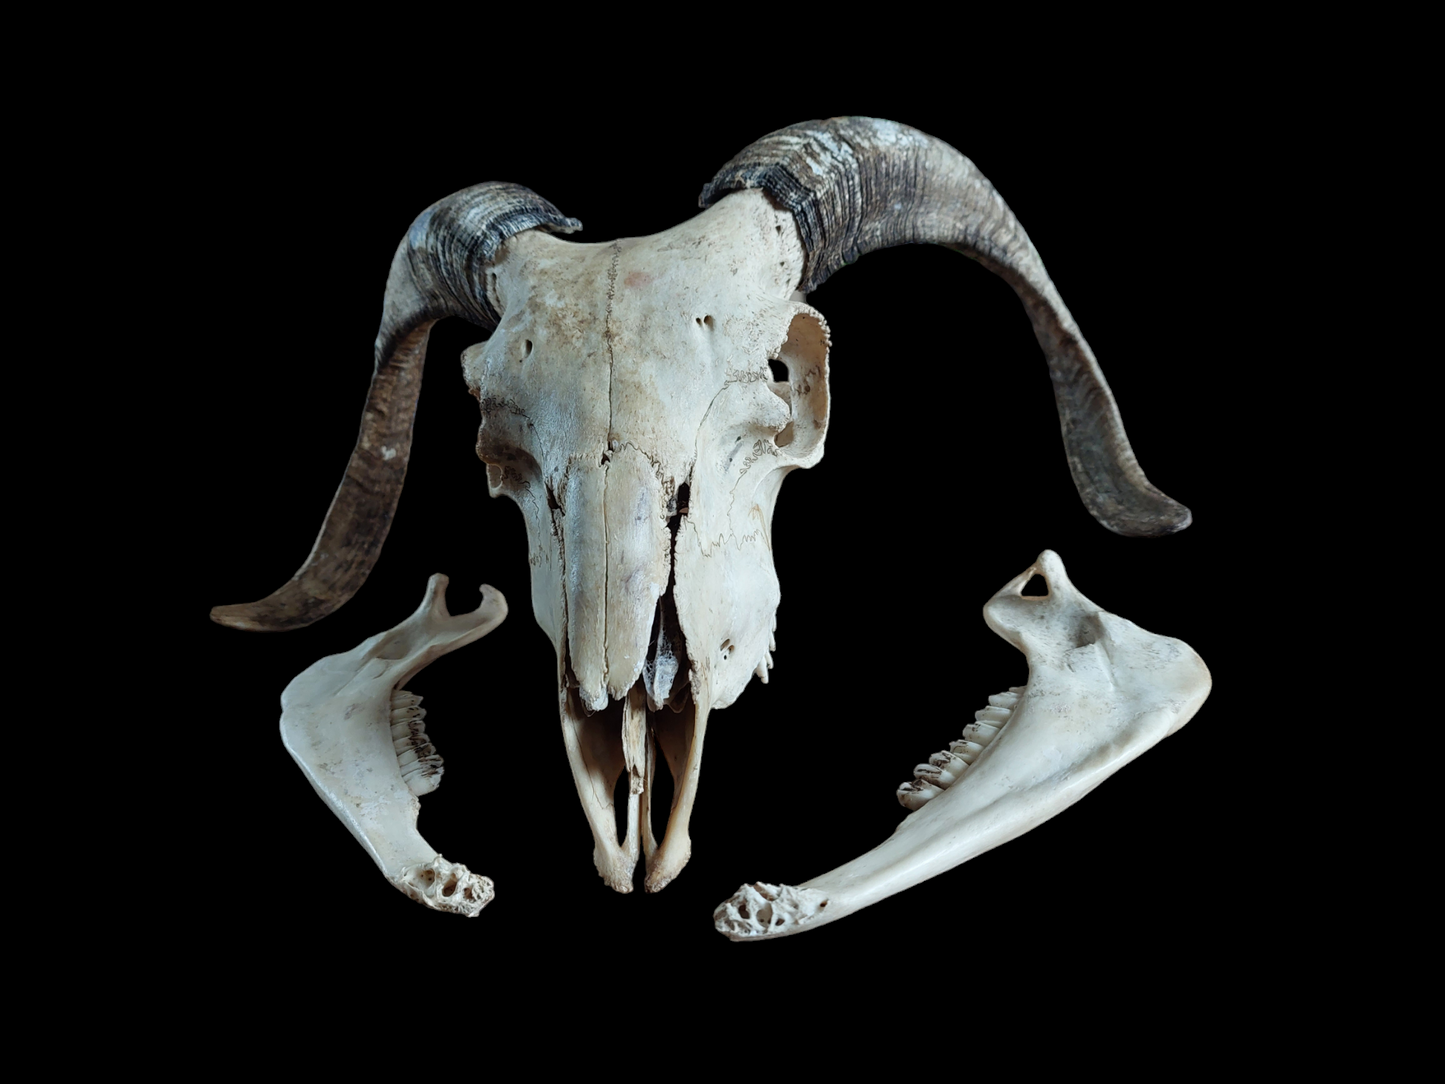 Sheep skull #2